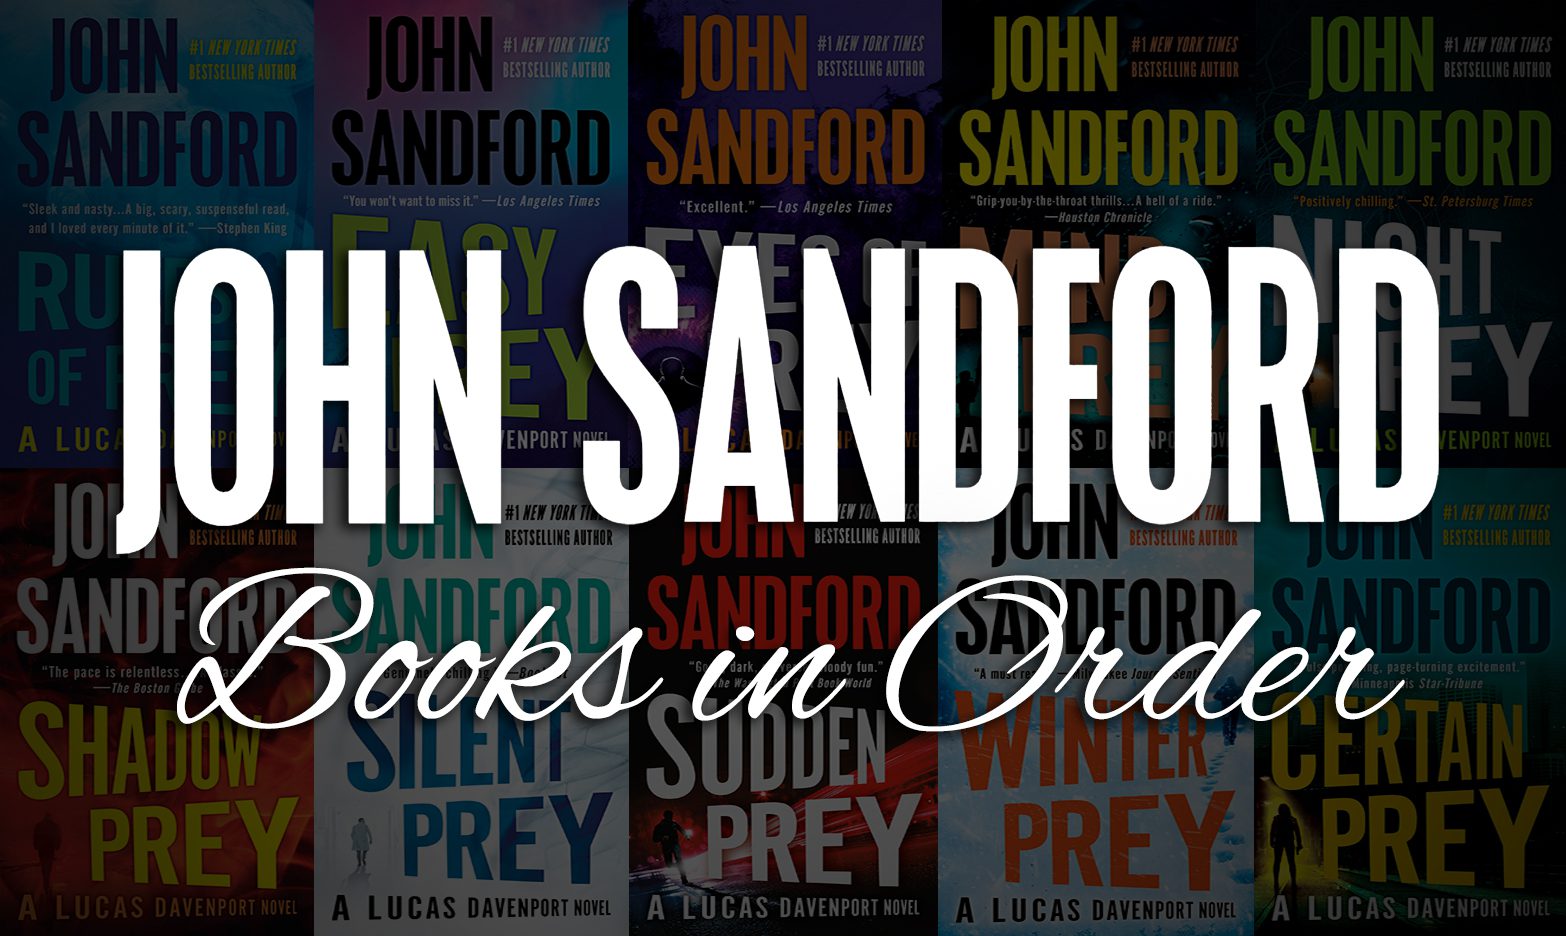 John Sandford Books in Order